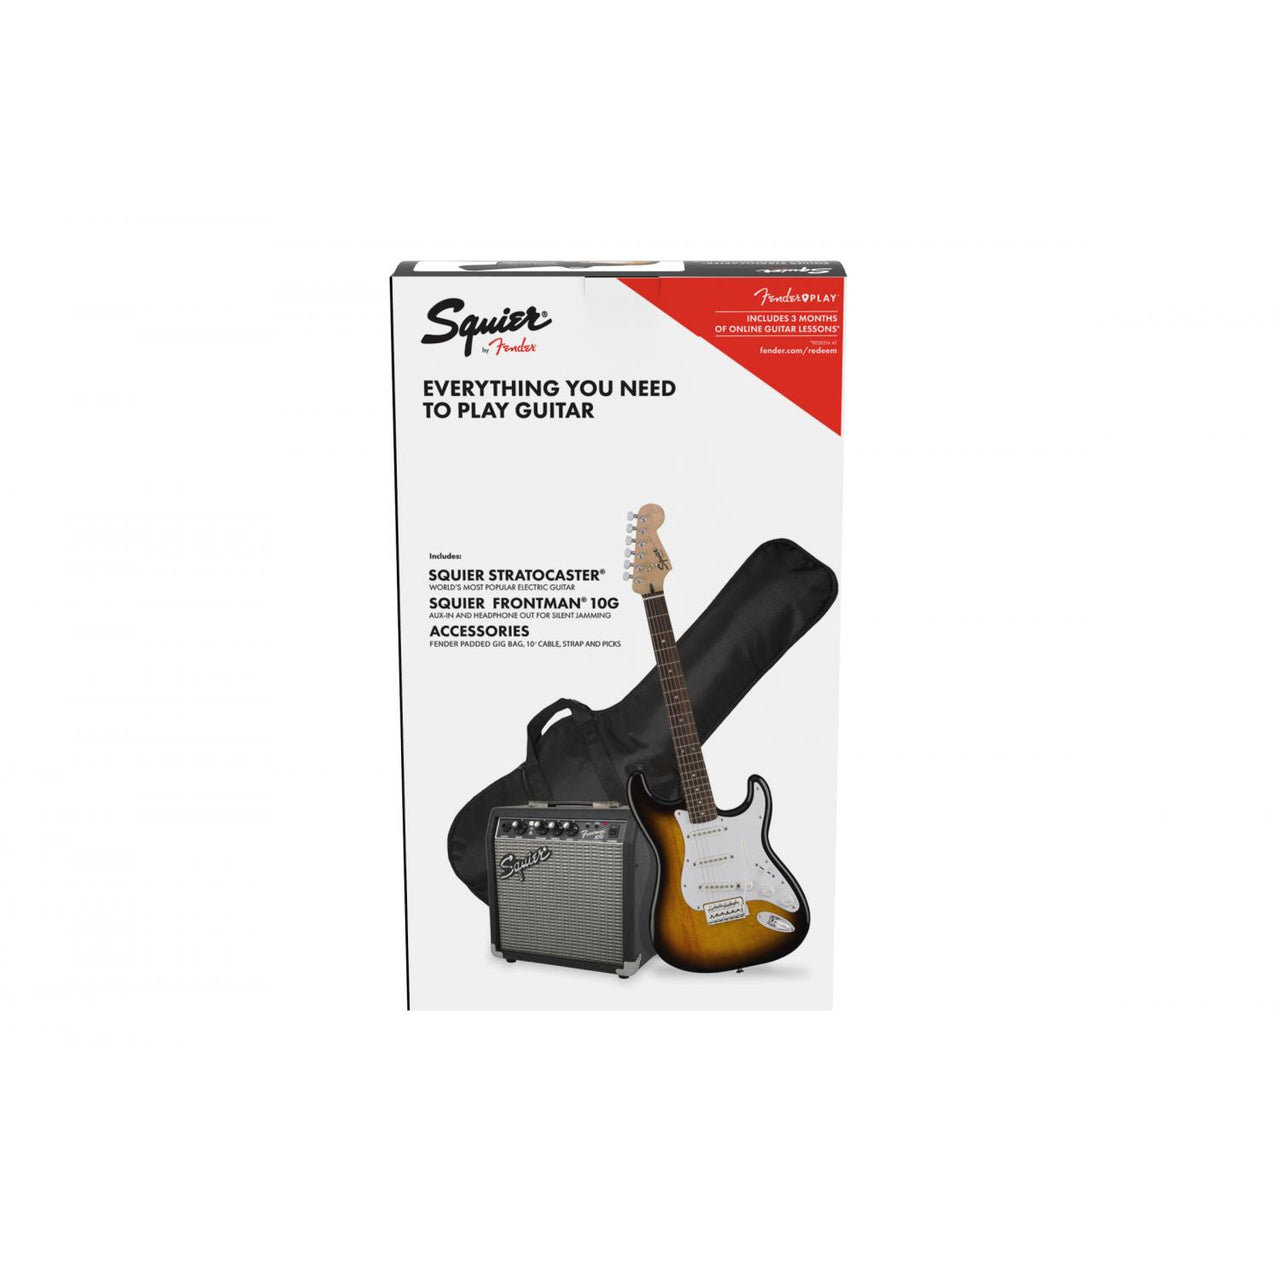 Paquete Guitarra Elect. Fender Pk Sq Strat Bsb Gb 10g 120v, 0371823032